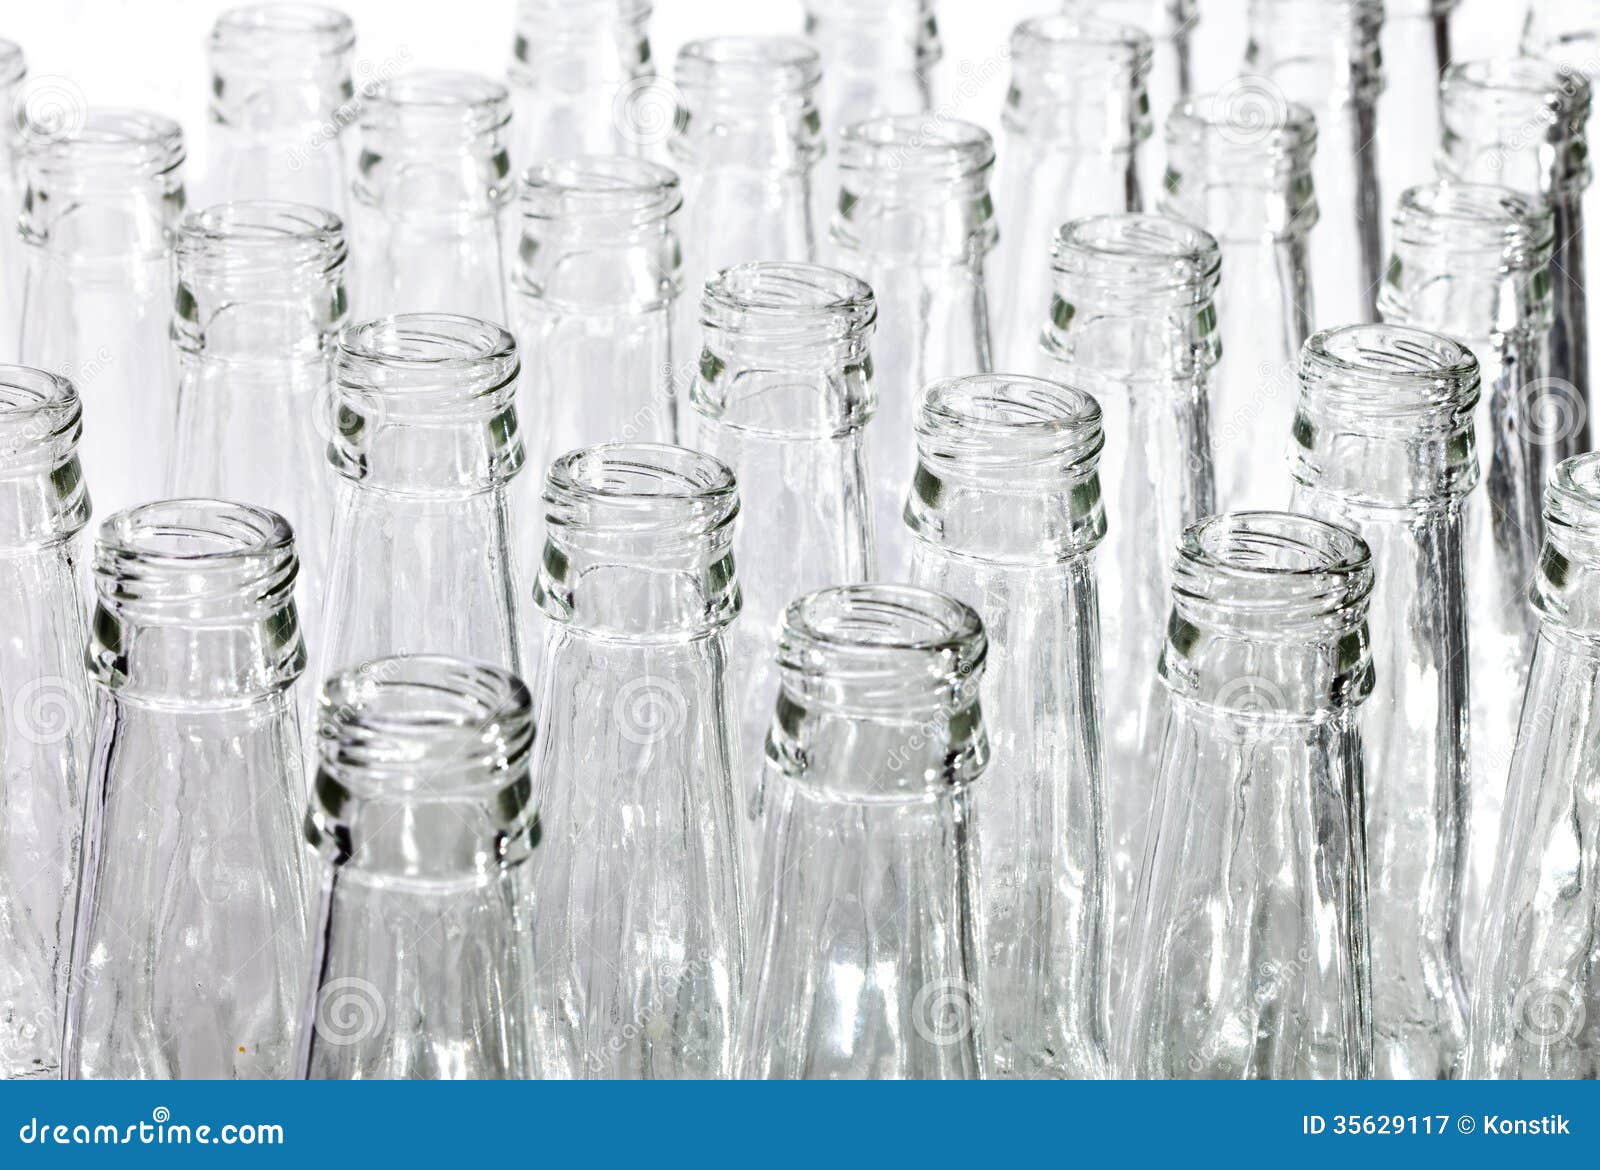 Почему пустые бутылки не ставят на стол. Фон под пустые стеклянные бутылки в IPG. Изображение на столе пустой бутылки стеклянной. Пустые бутылки ставим под стол. Ткань закрывает бутылку.